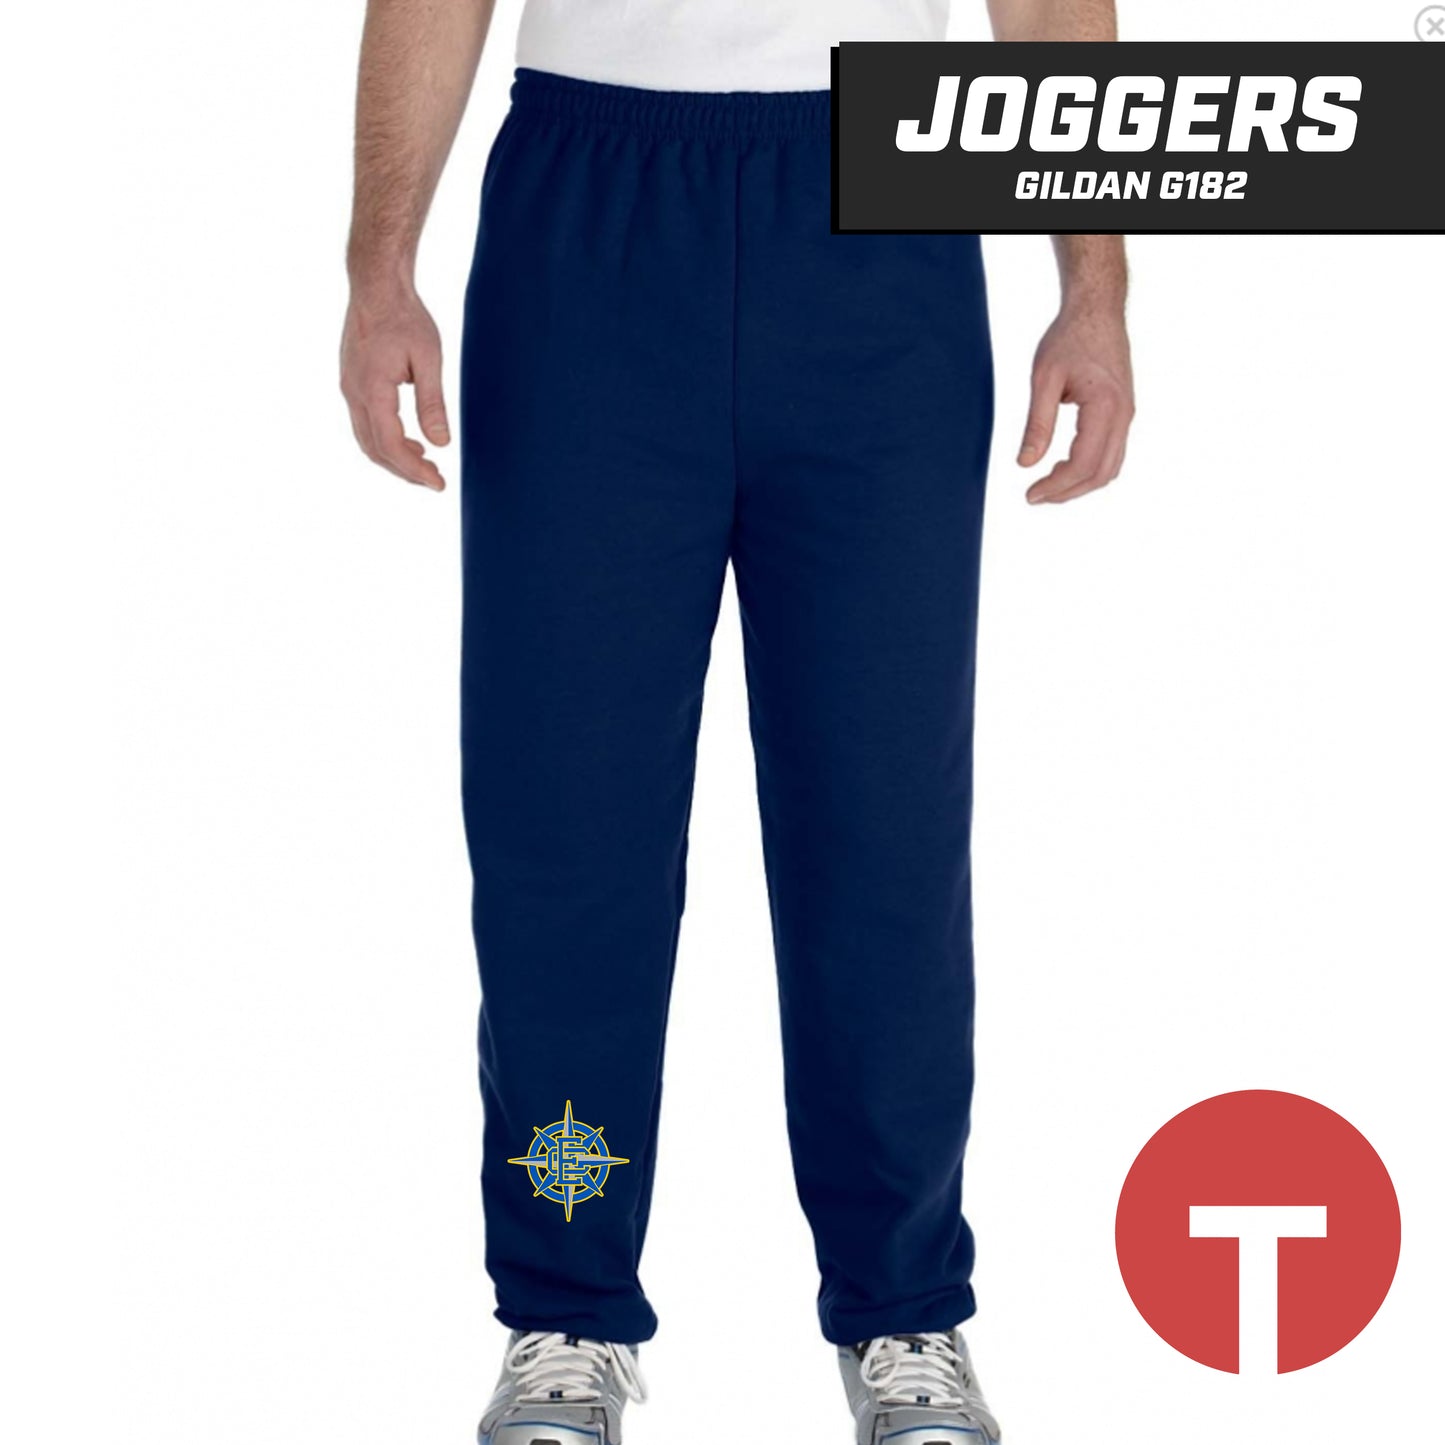 ECB Mariners - Jogger pants Gildan G182 - LOGO 1